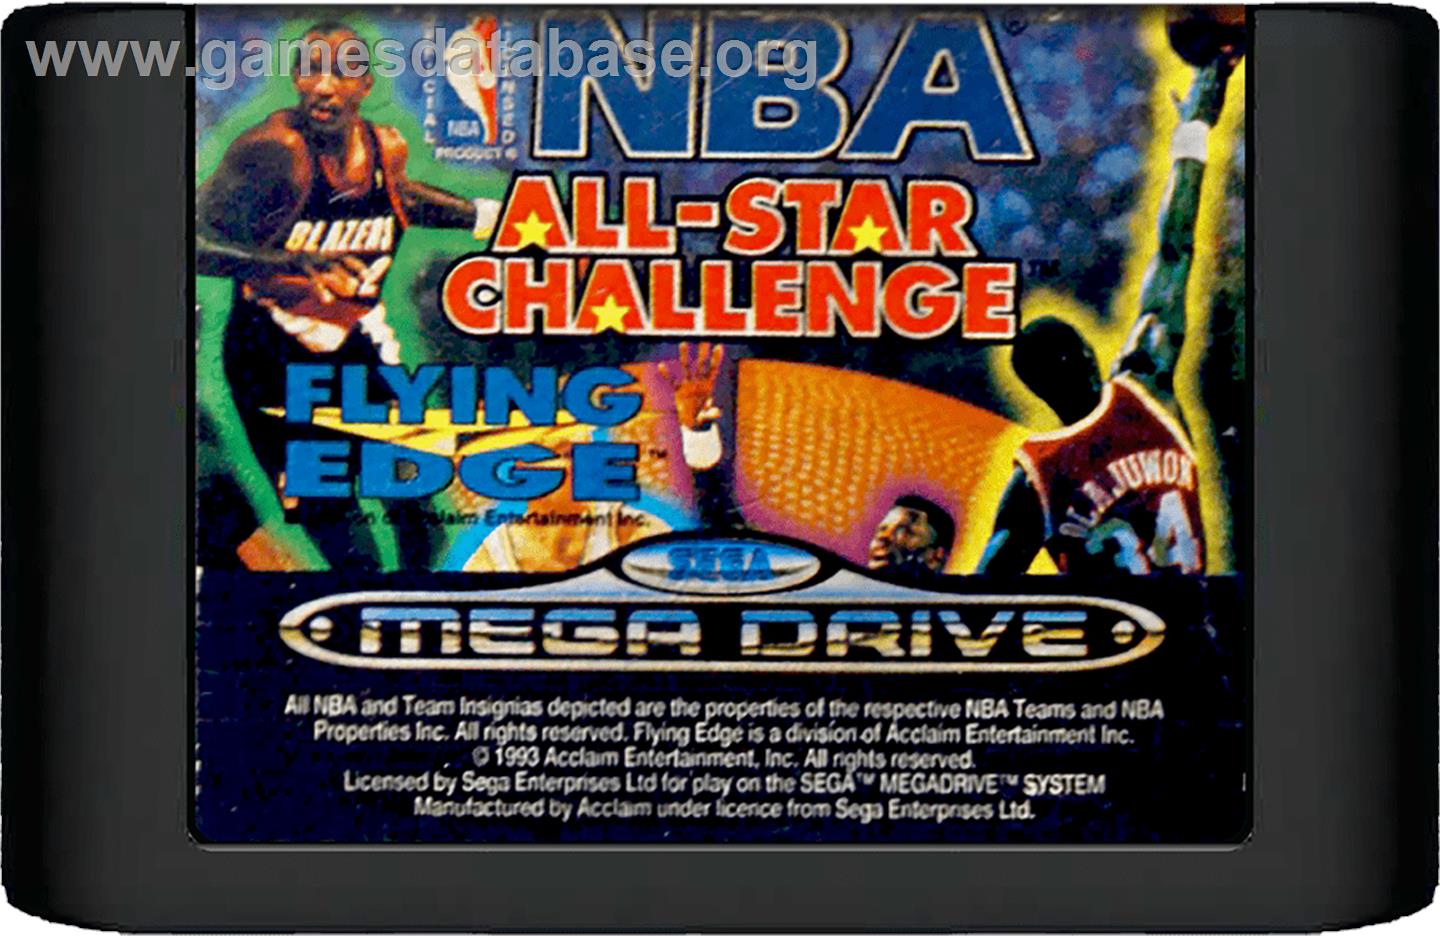 NBA All-Star Challenge - Sega Genesis - Artwork - Cartridge